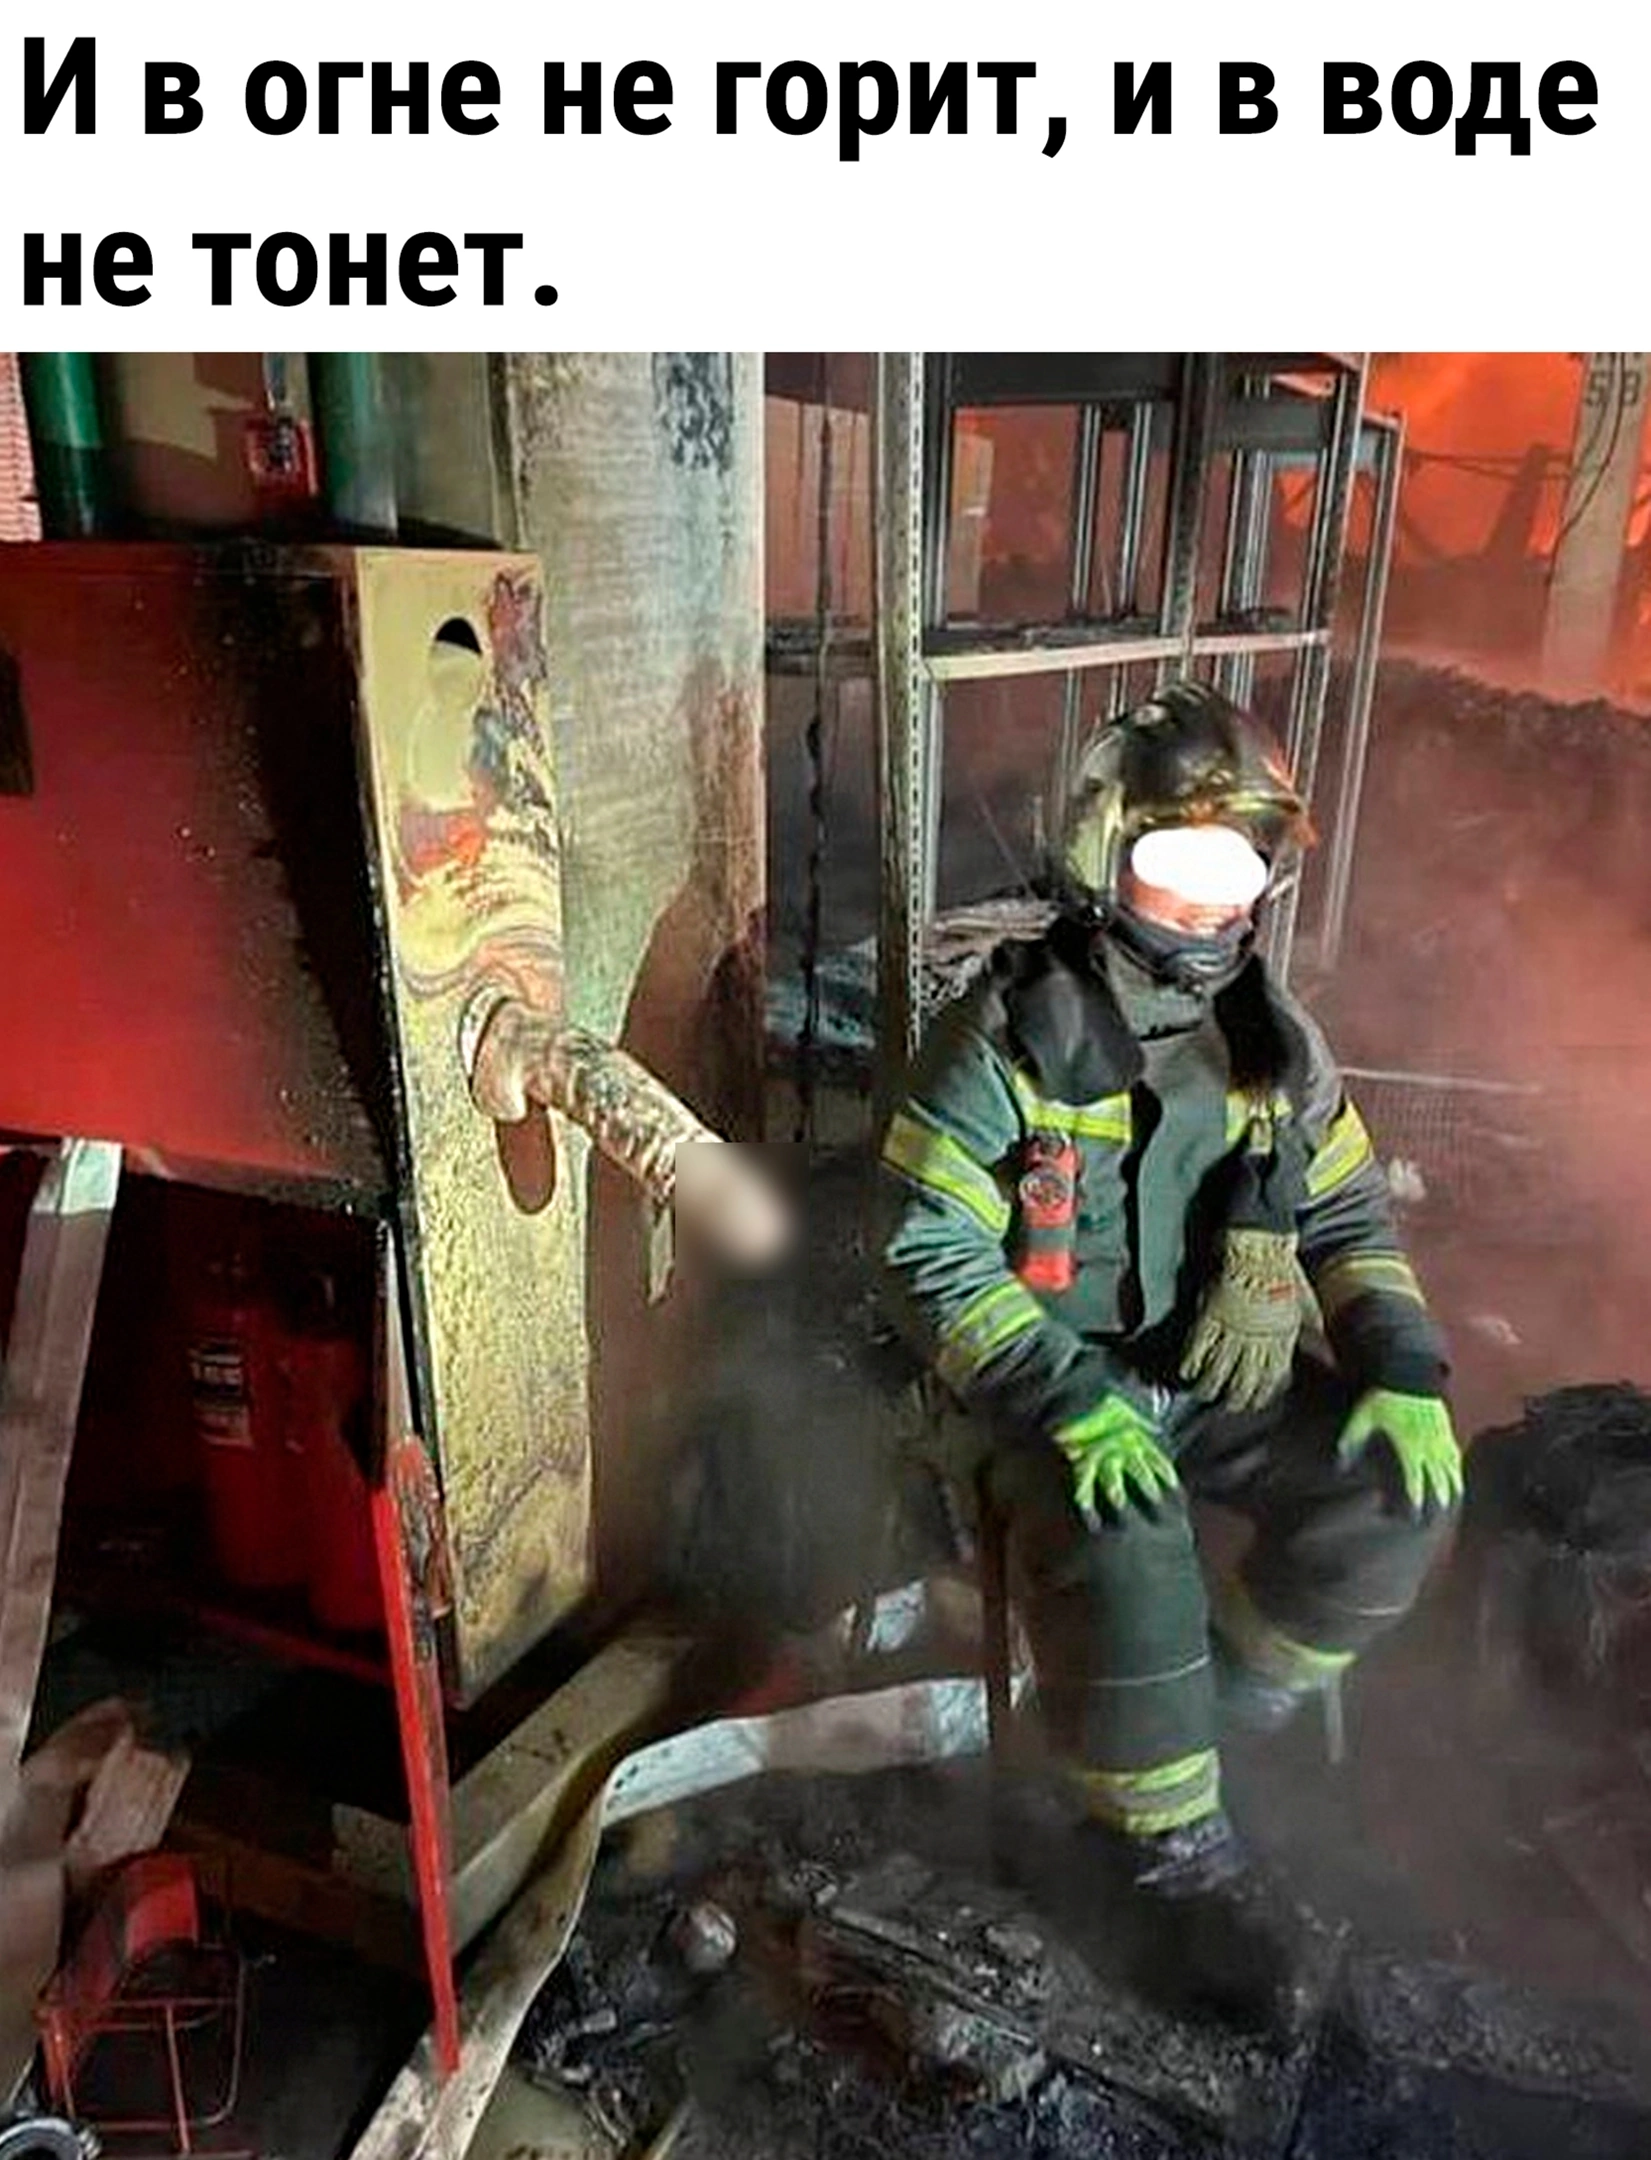 В пожарной части - порно видео на заточка63.рф